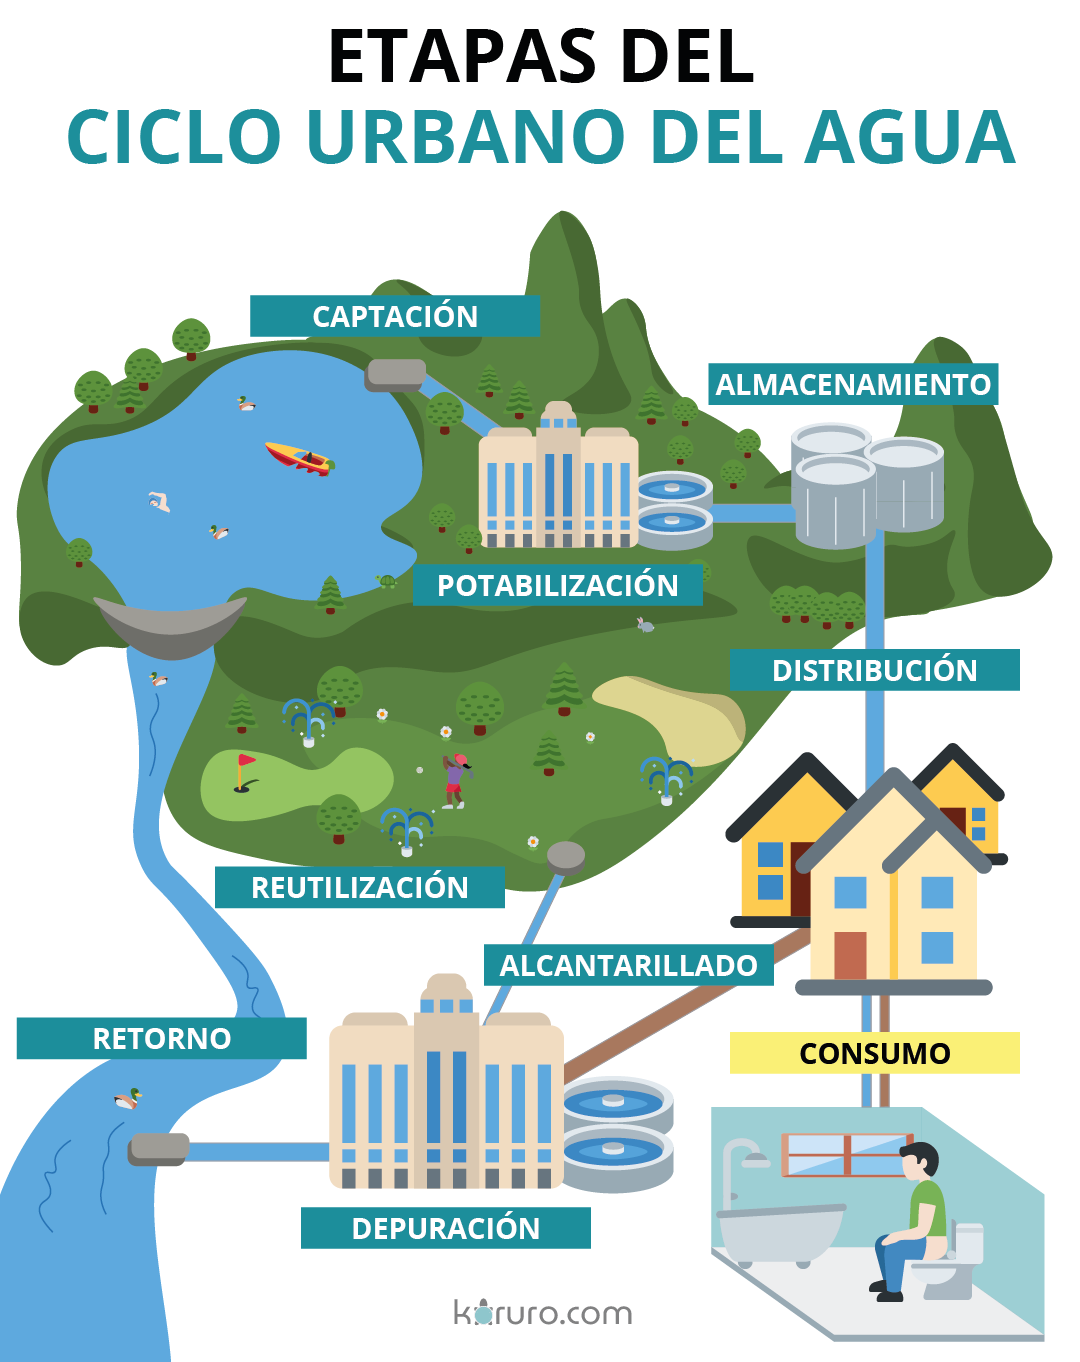 etapas del ciclo urbano del agua